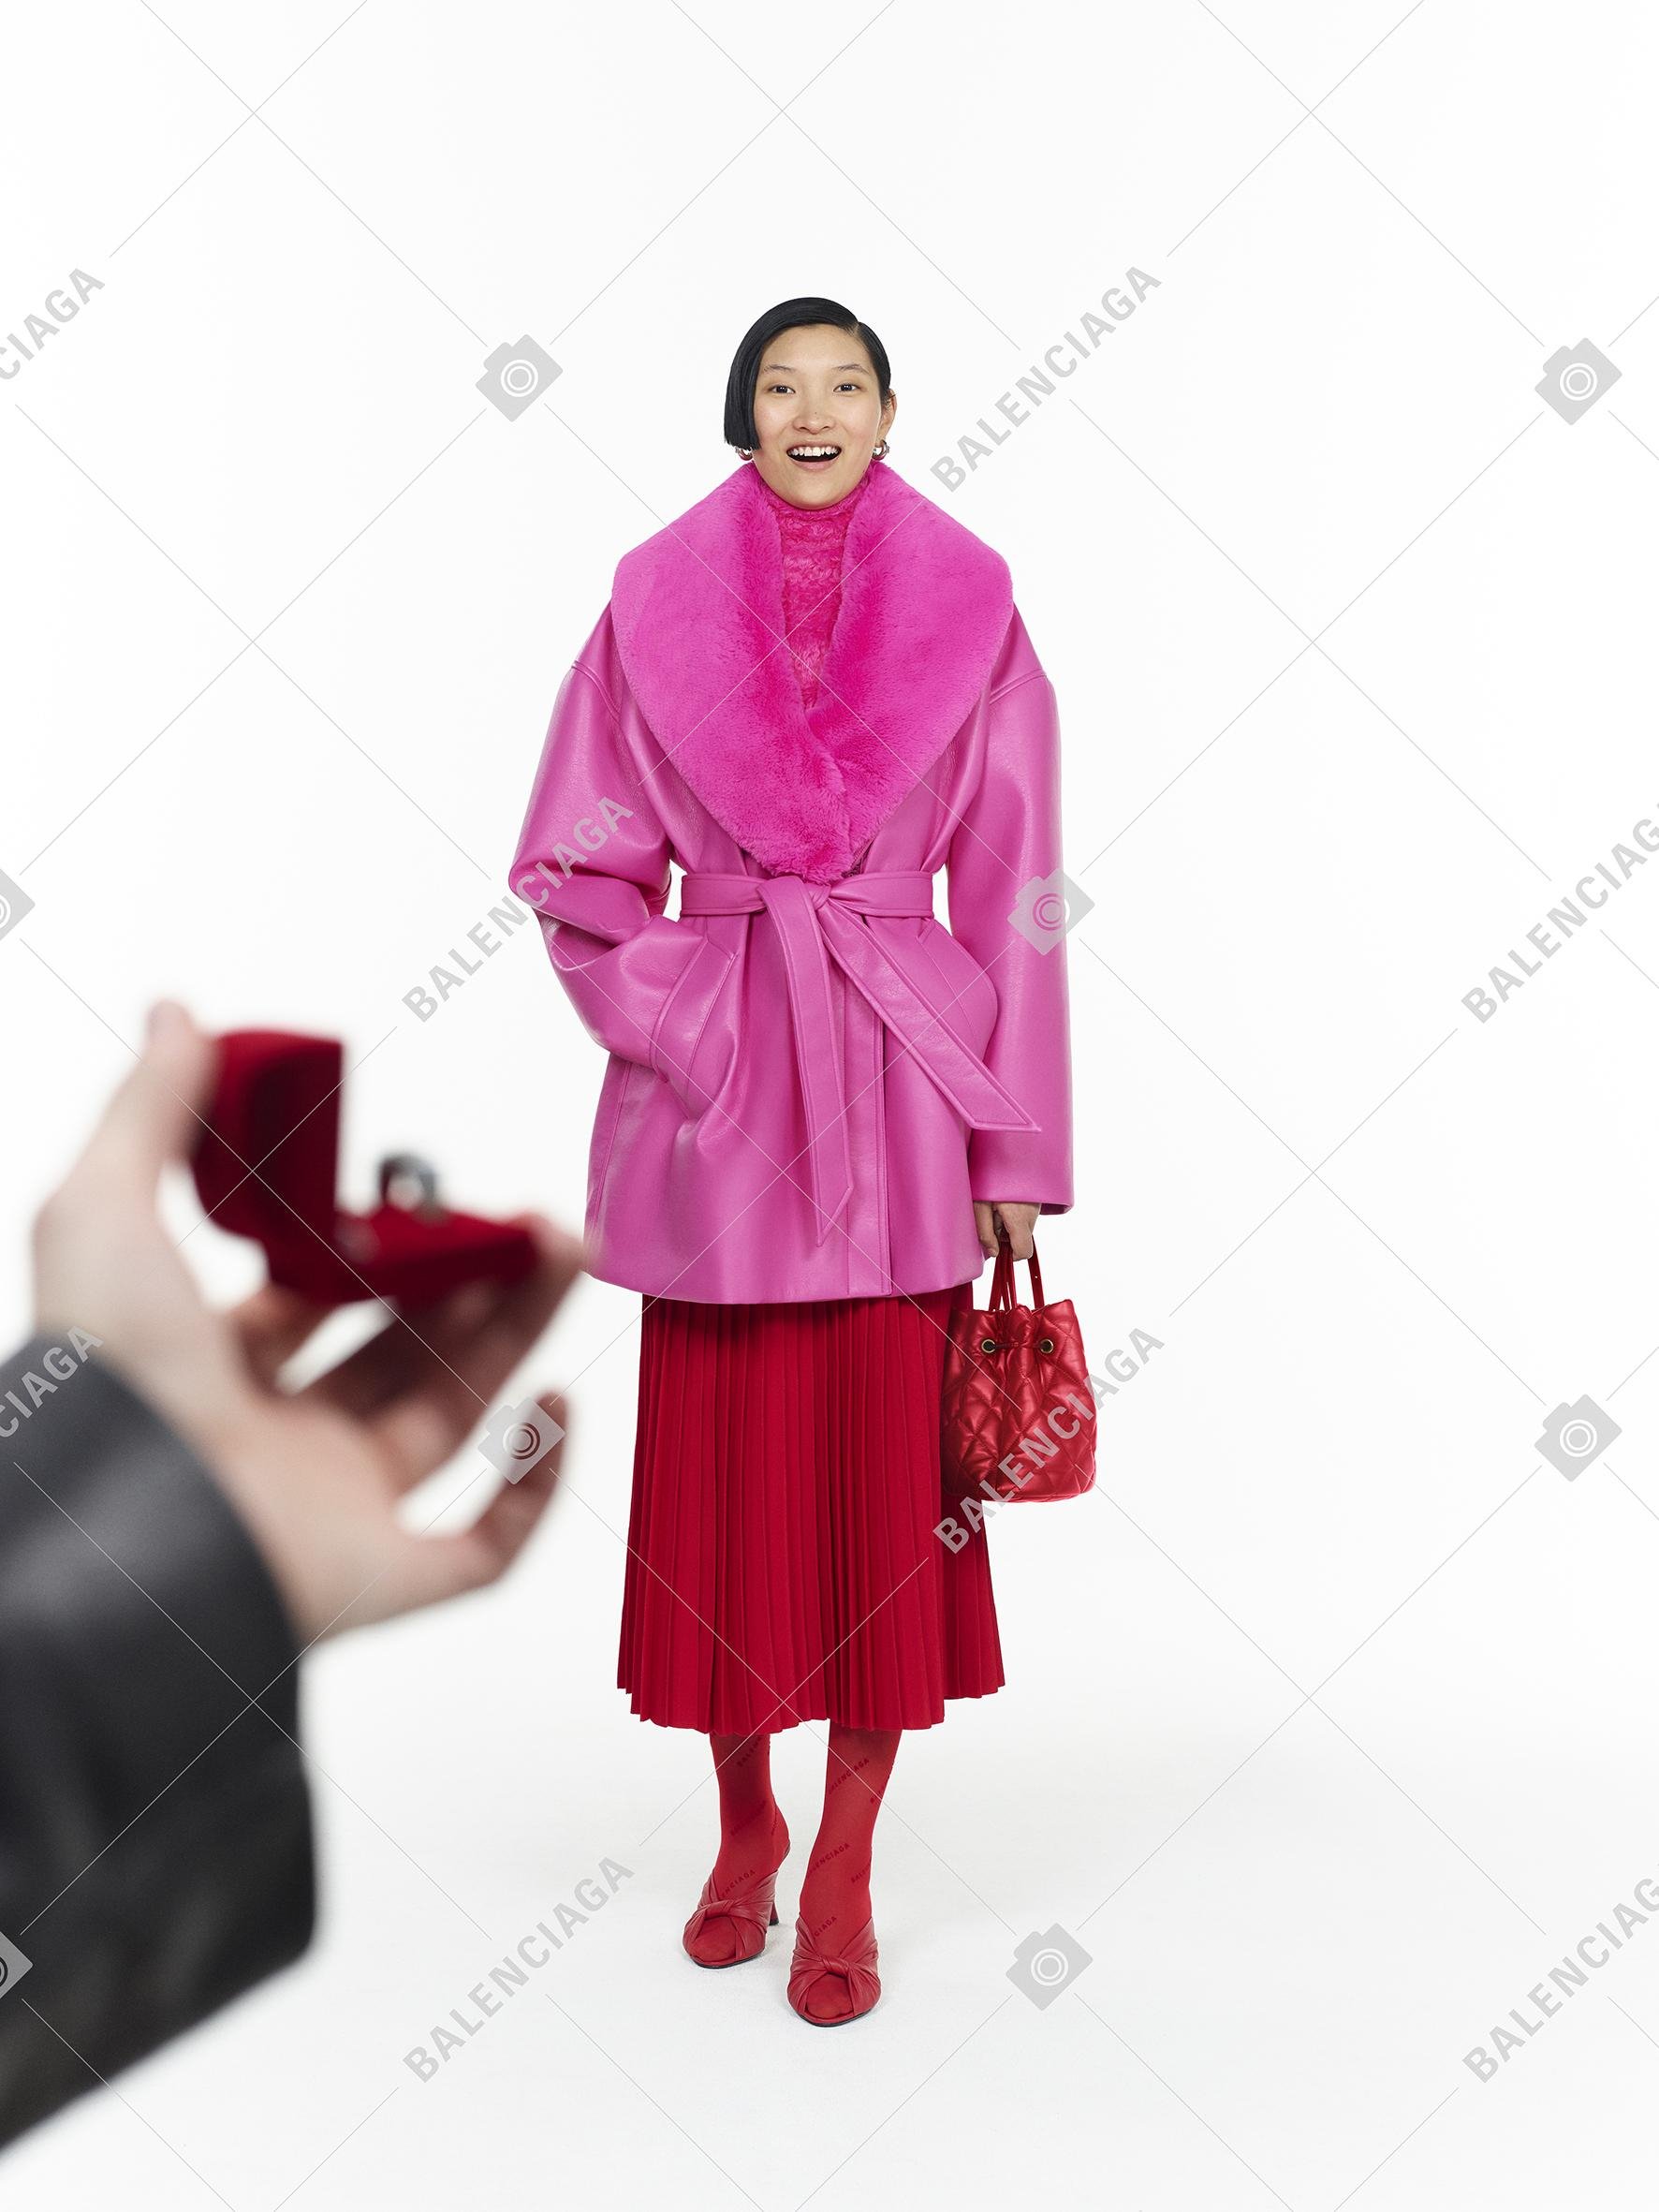 مجموعة بالنسياغا التحضيرية لخريف 2020 ملابس نسائية أزياء نسائية أحذية نسائية سروال توب بلوزة فستان بوتس